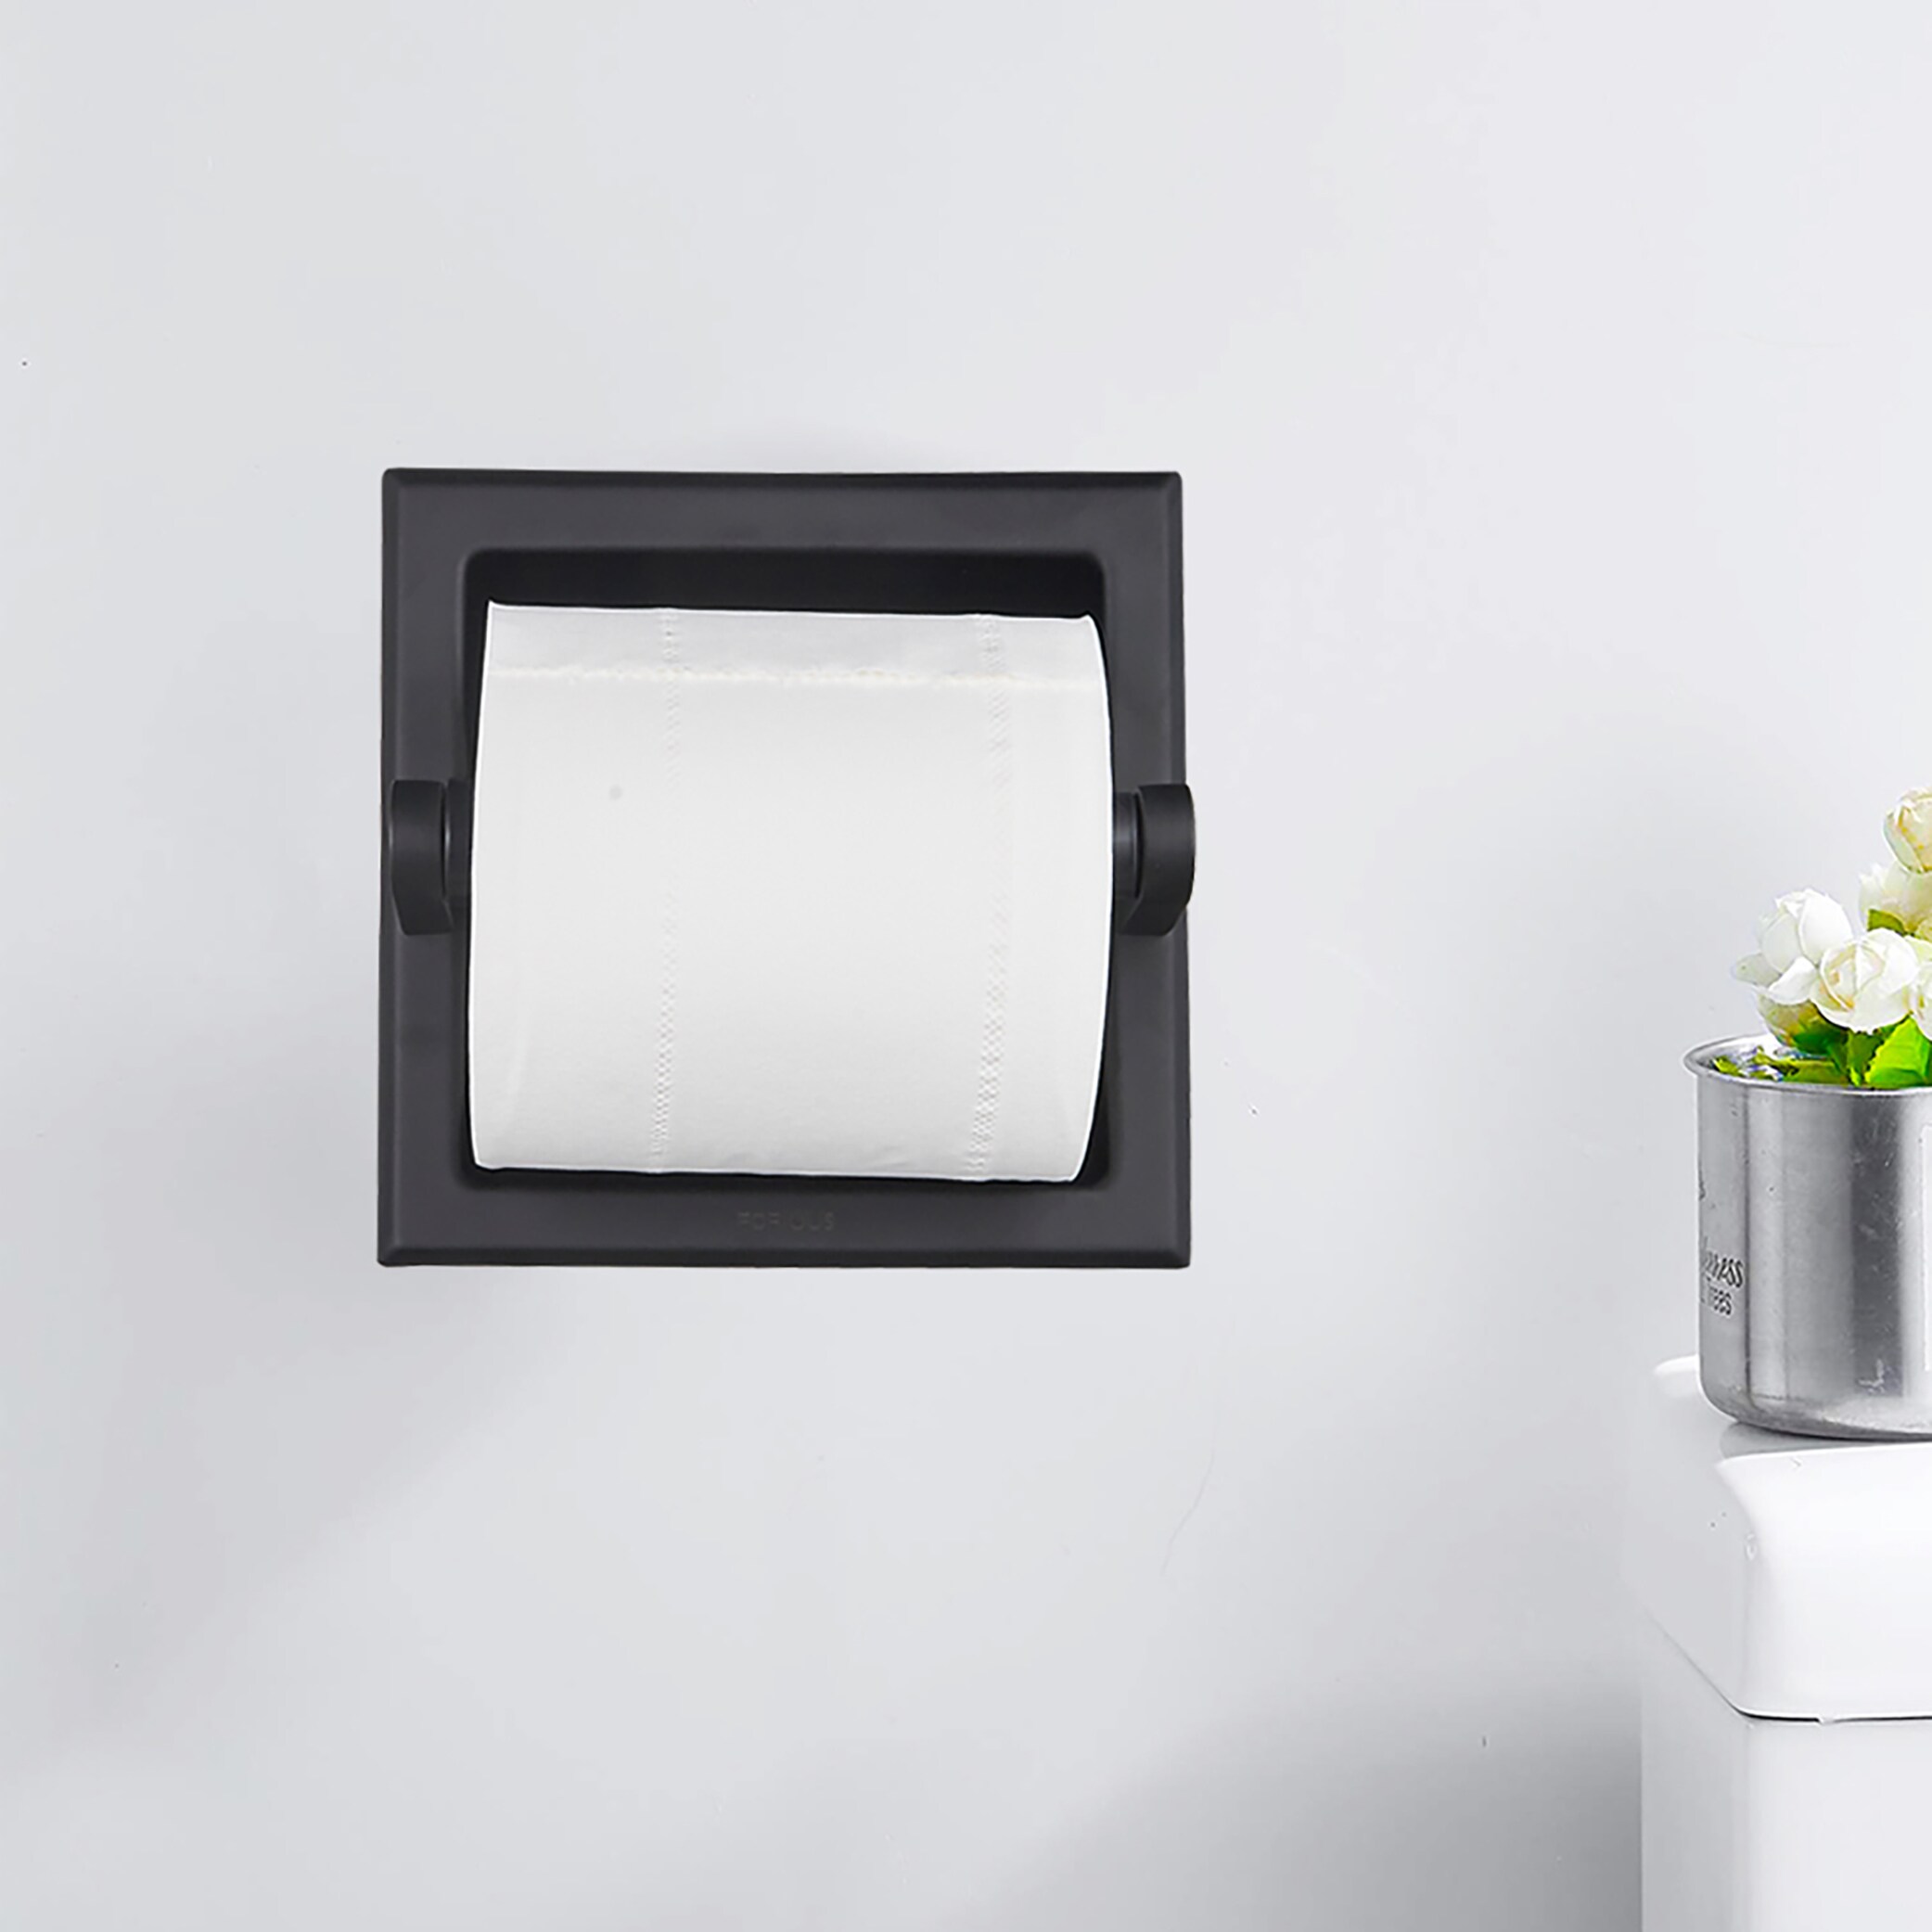 Bathroom Toilet Paper Holder Black - Dear Household